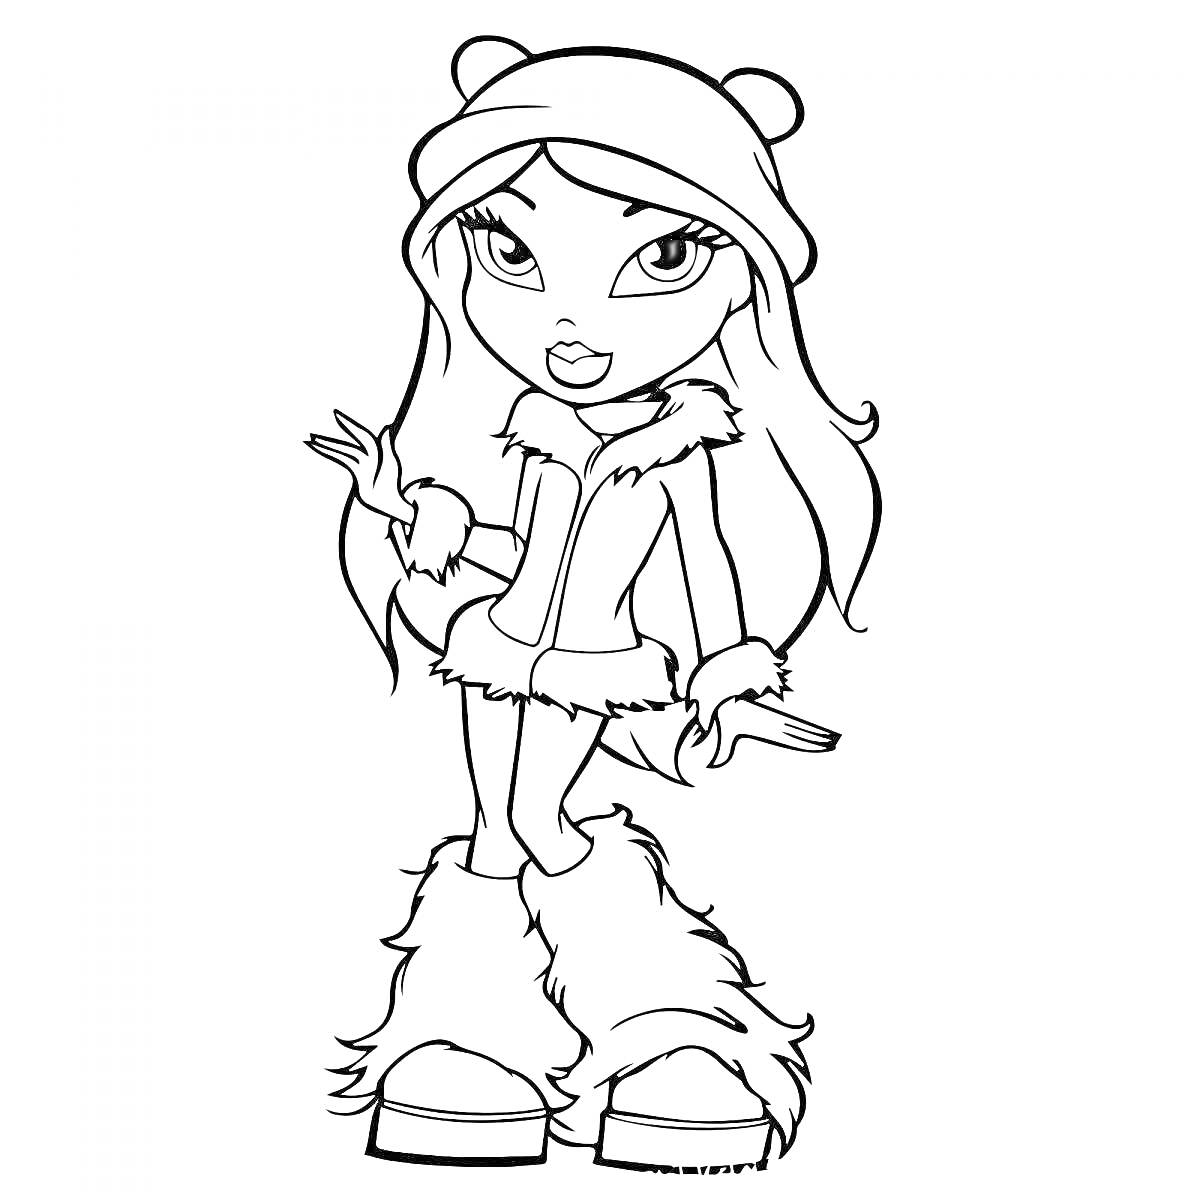 Раскраска Девочка в зимней одежде с длинными волосами и ушками на шапке